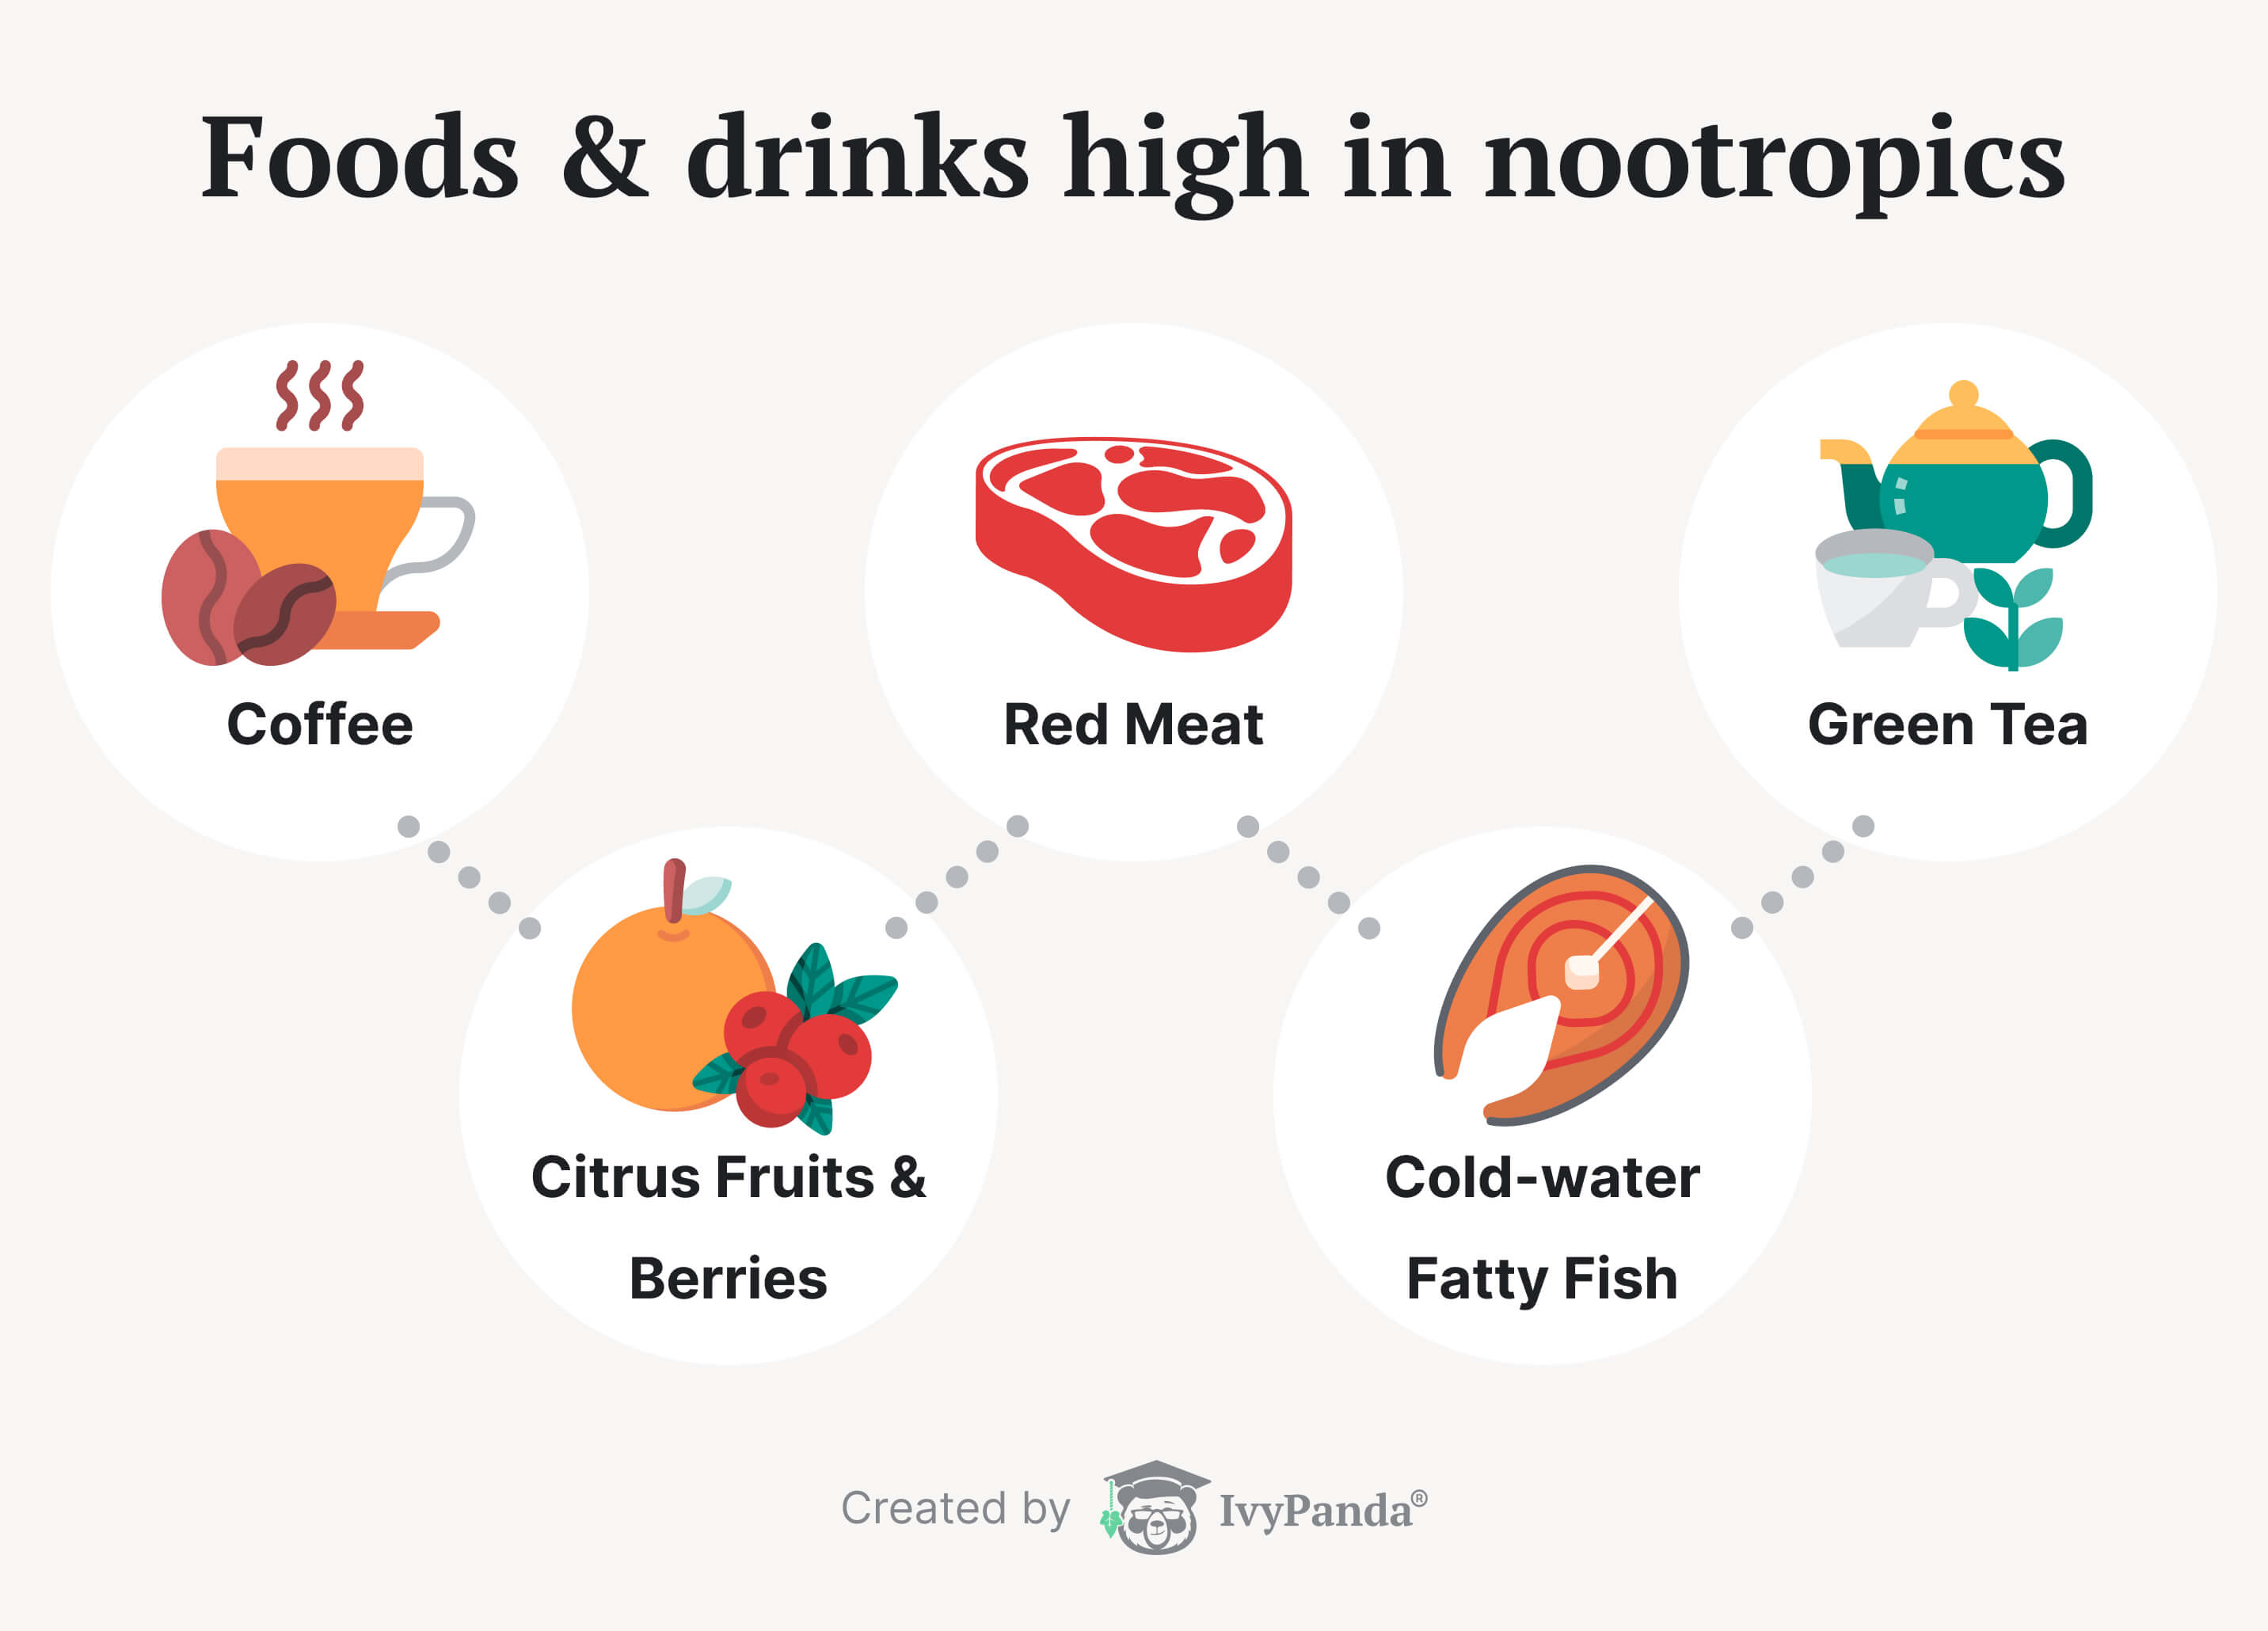 Foods & drinks high in nootropics.